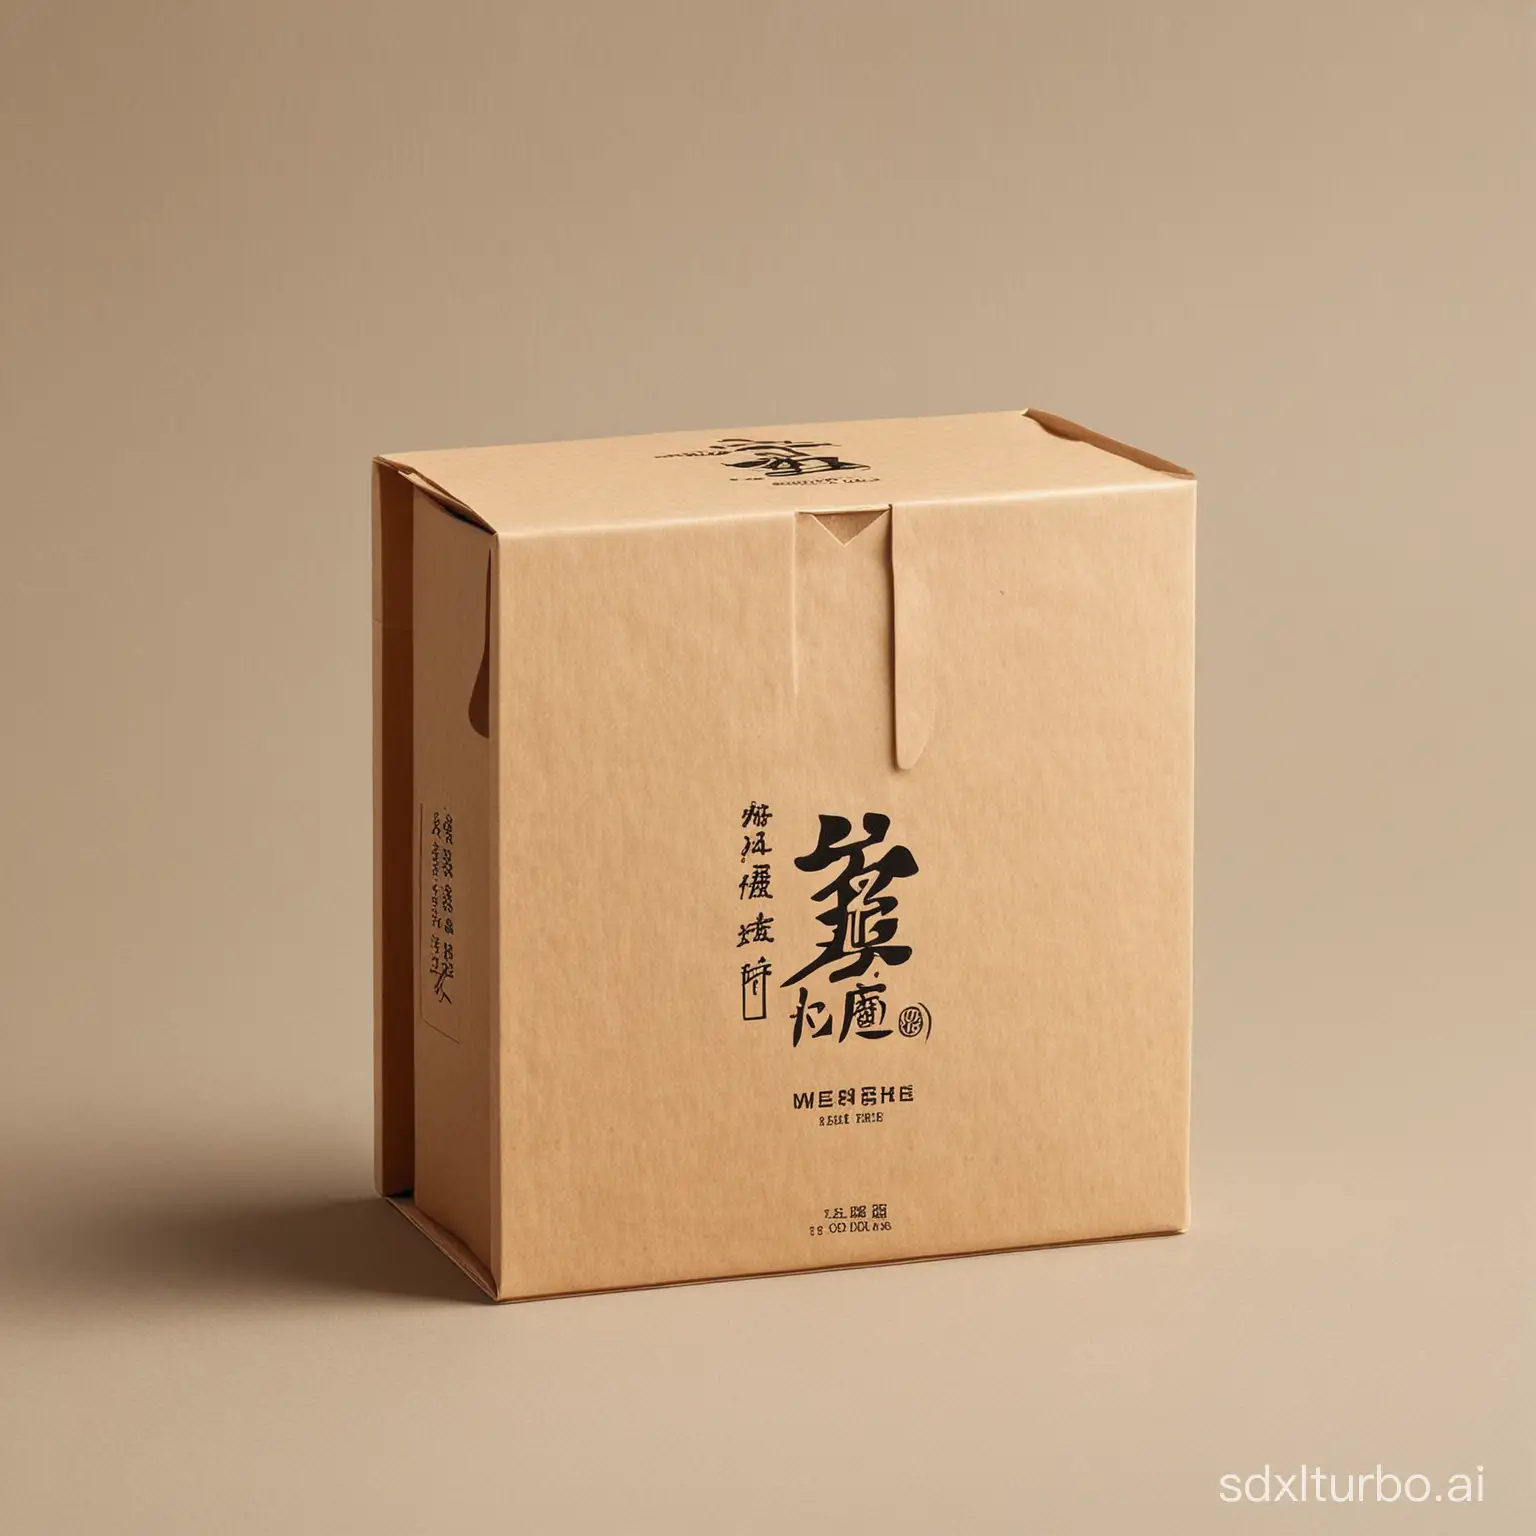 Chinese tea packaging, simple.